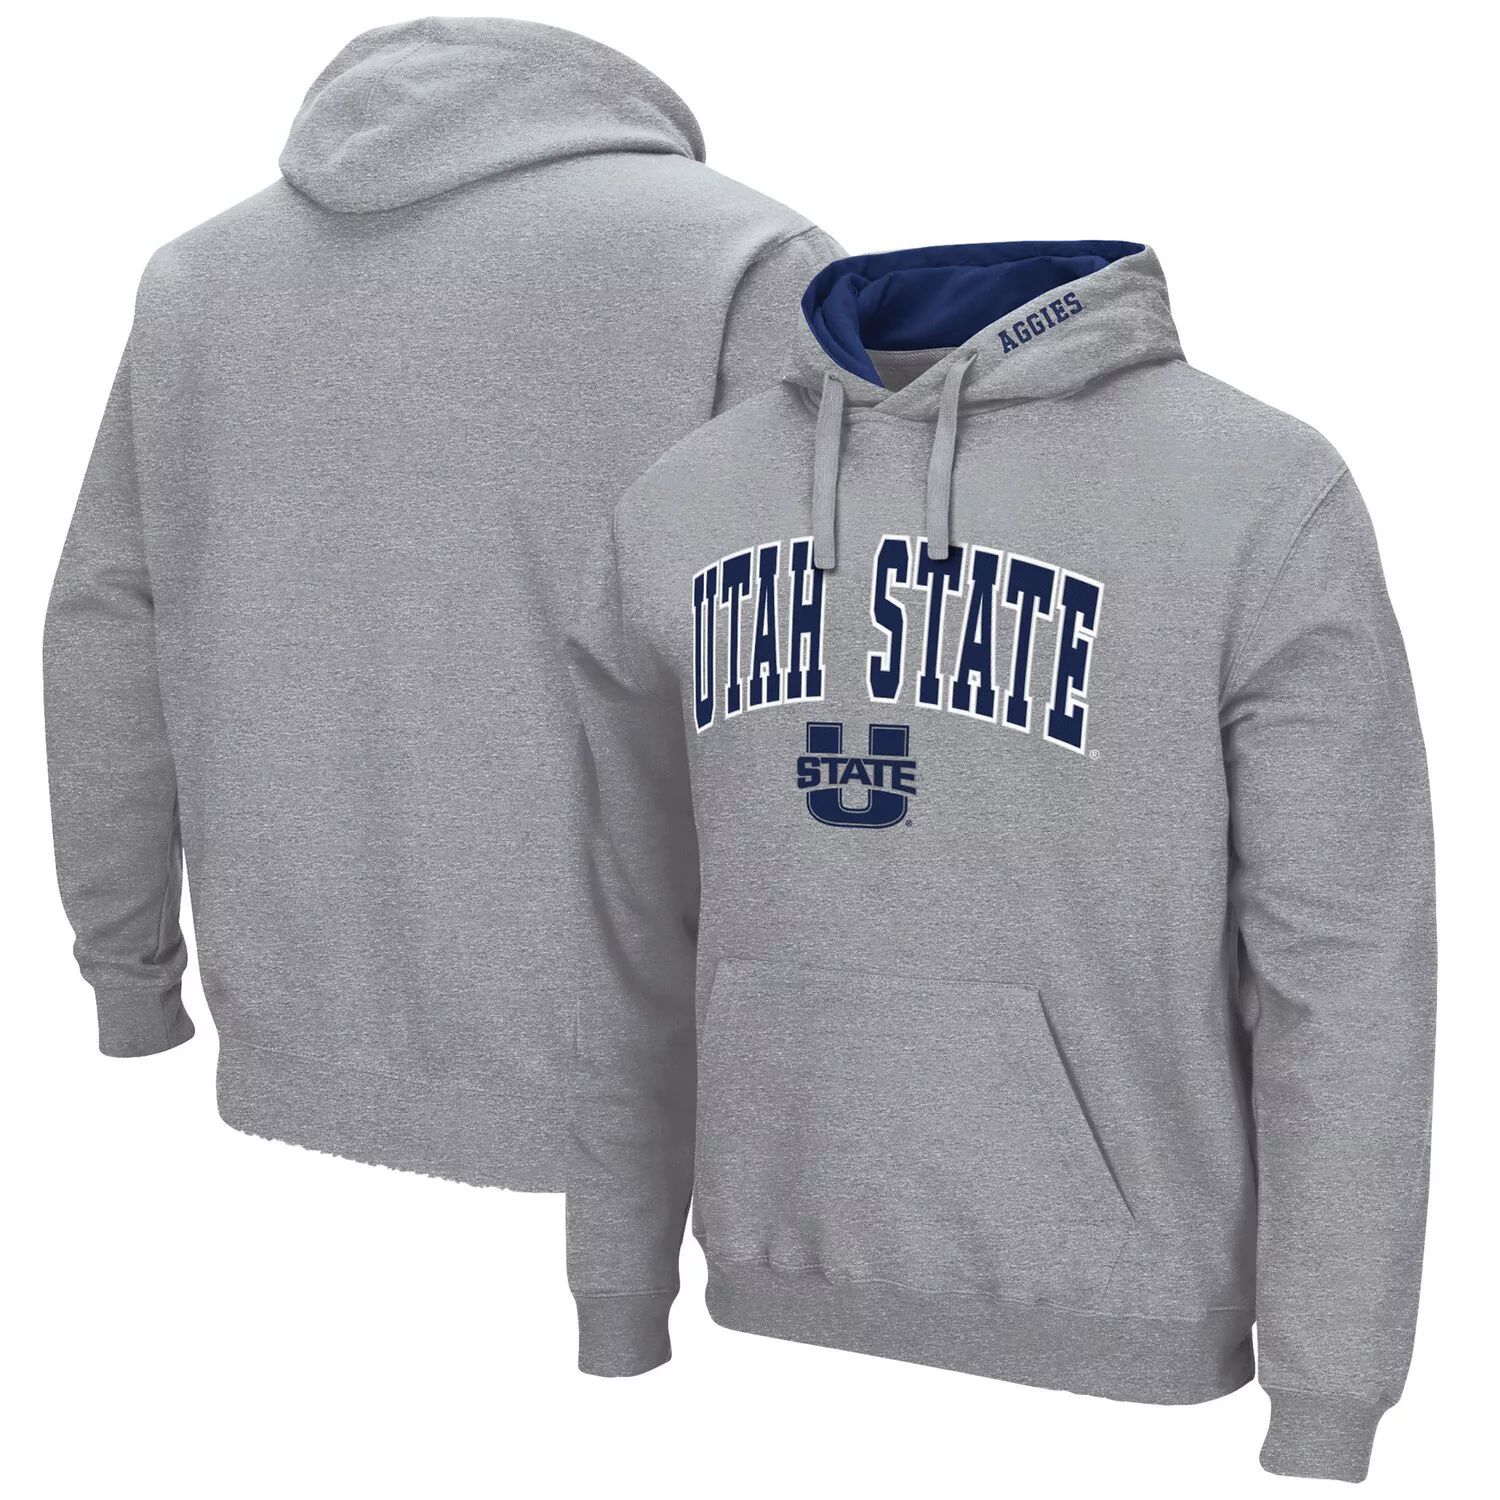 Мужской серый пуловер с капюшоном и логотипом штата Юта Aggies Arch Colosseum